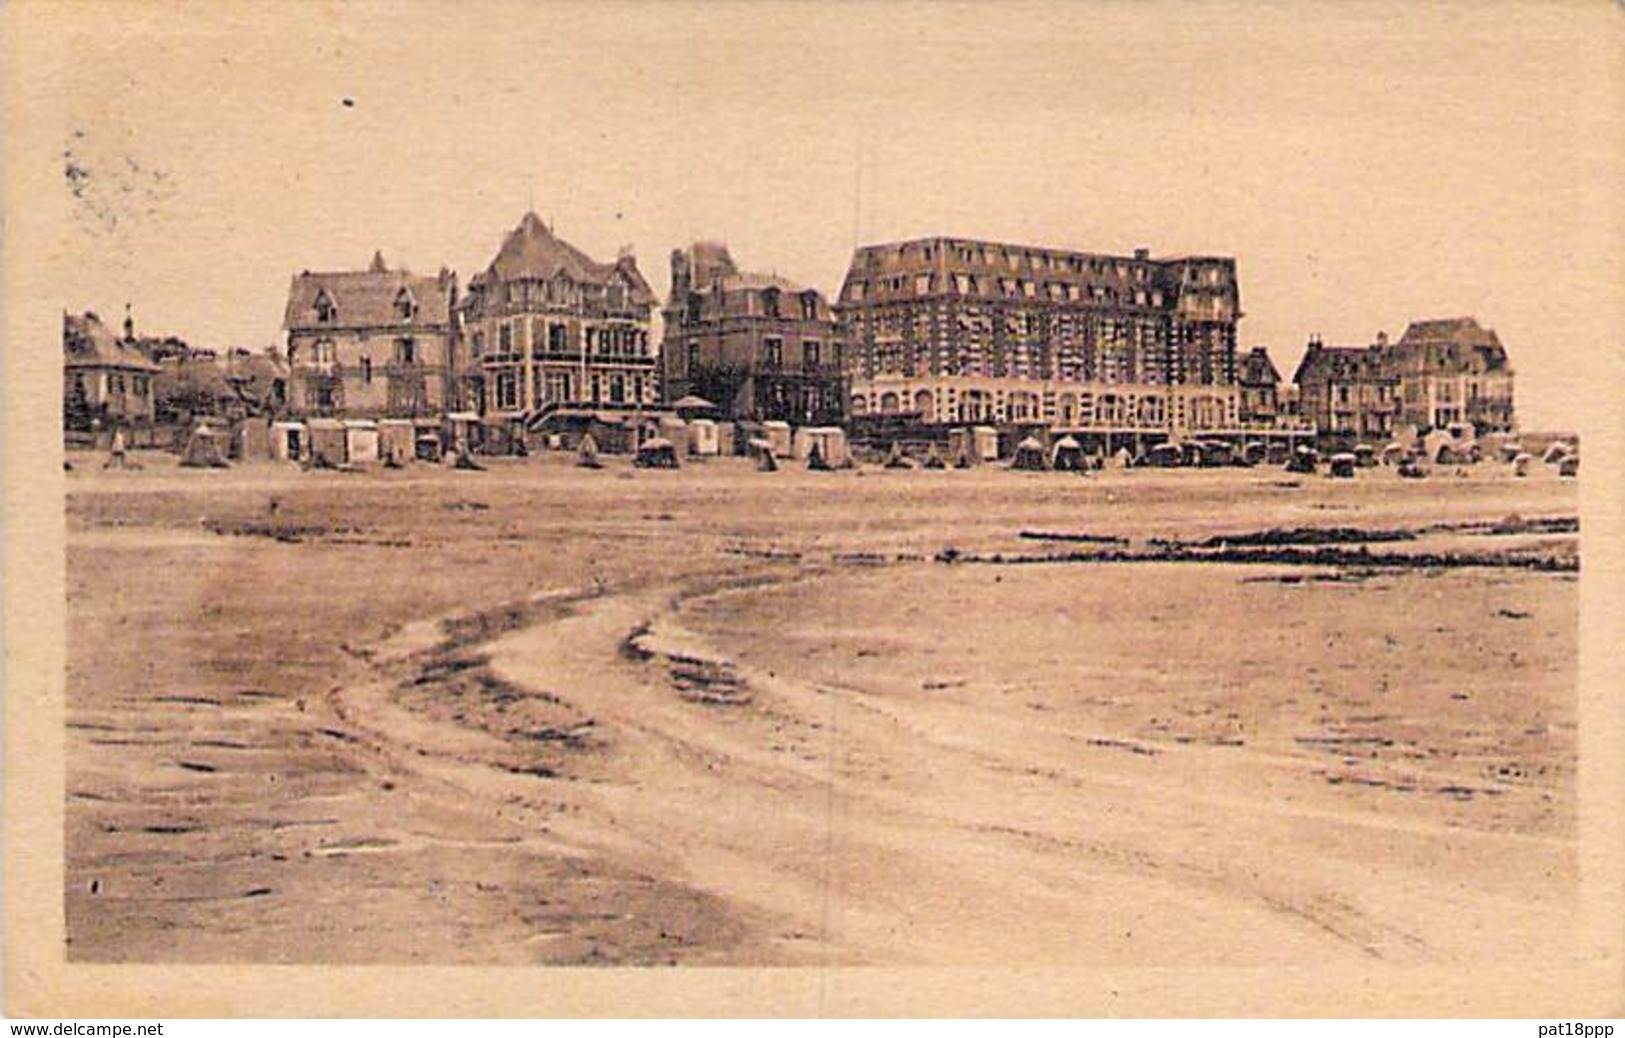 14 - BLONVILLE SUR MER La Plage Le Grand Hotel Et Les Villas - CPSM Sépia Village ( 1.500 Habitants ) PF 1949 - Calvados - Sonstige & Ohne Zuordnung